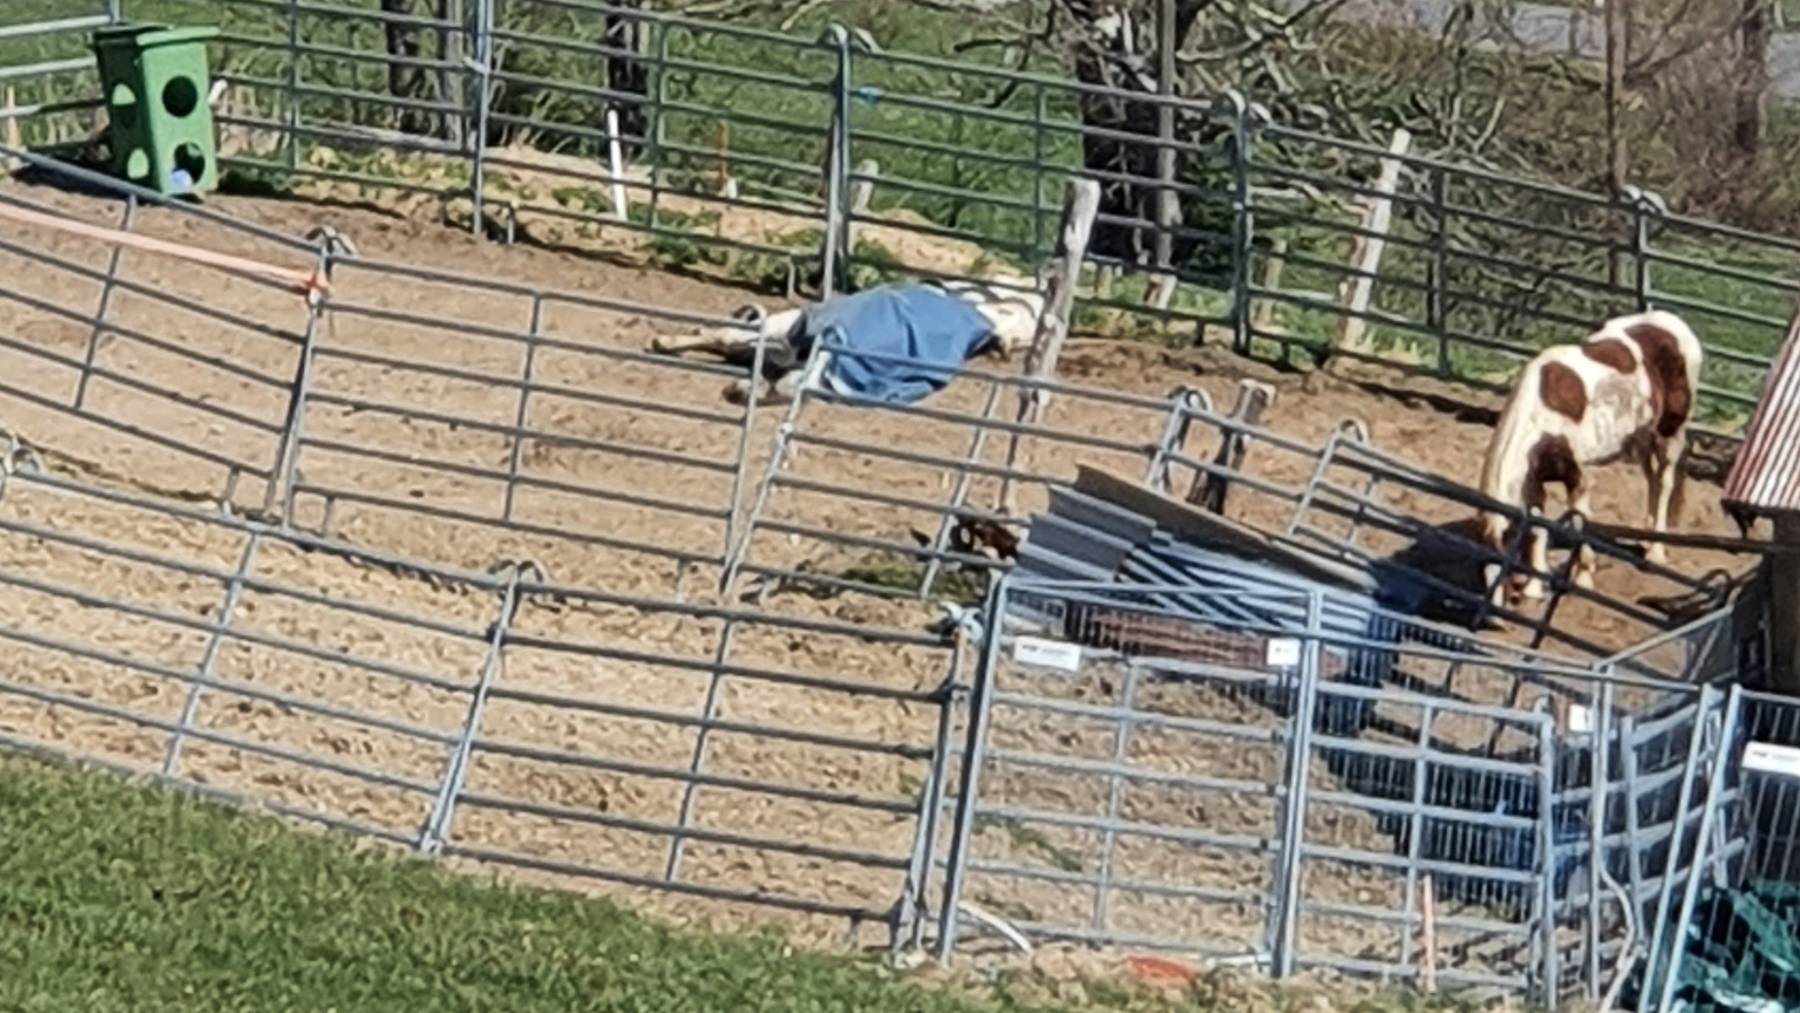 Das weisse Pferd lag mit einer blauen Decke am Boden und versuchte immer wieder aufzustehen. Ein Nachbar bemerkte dies und meldete den Fall.